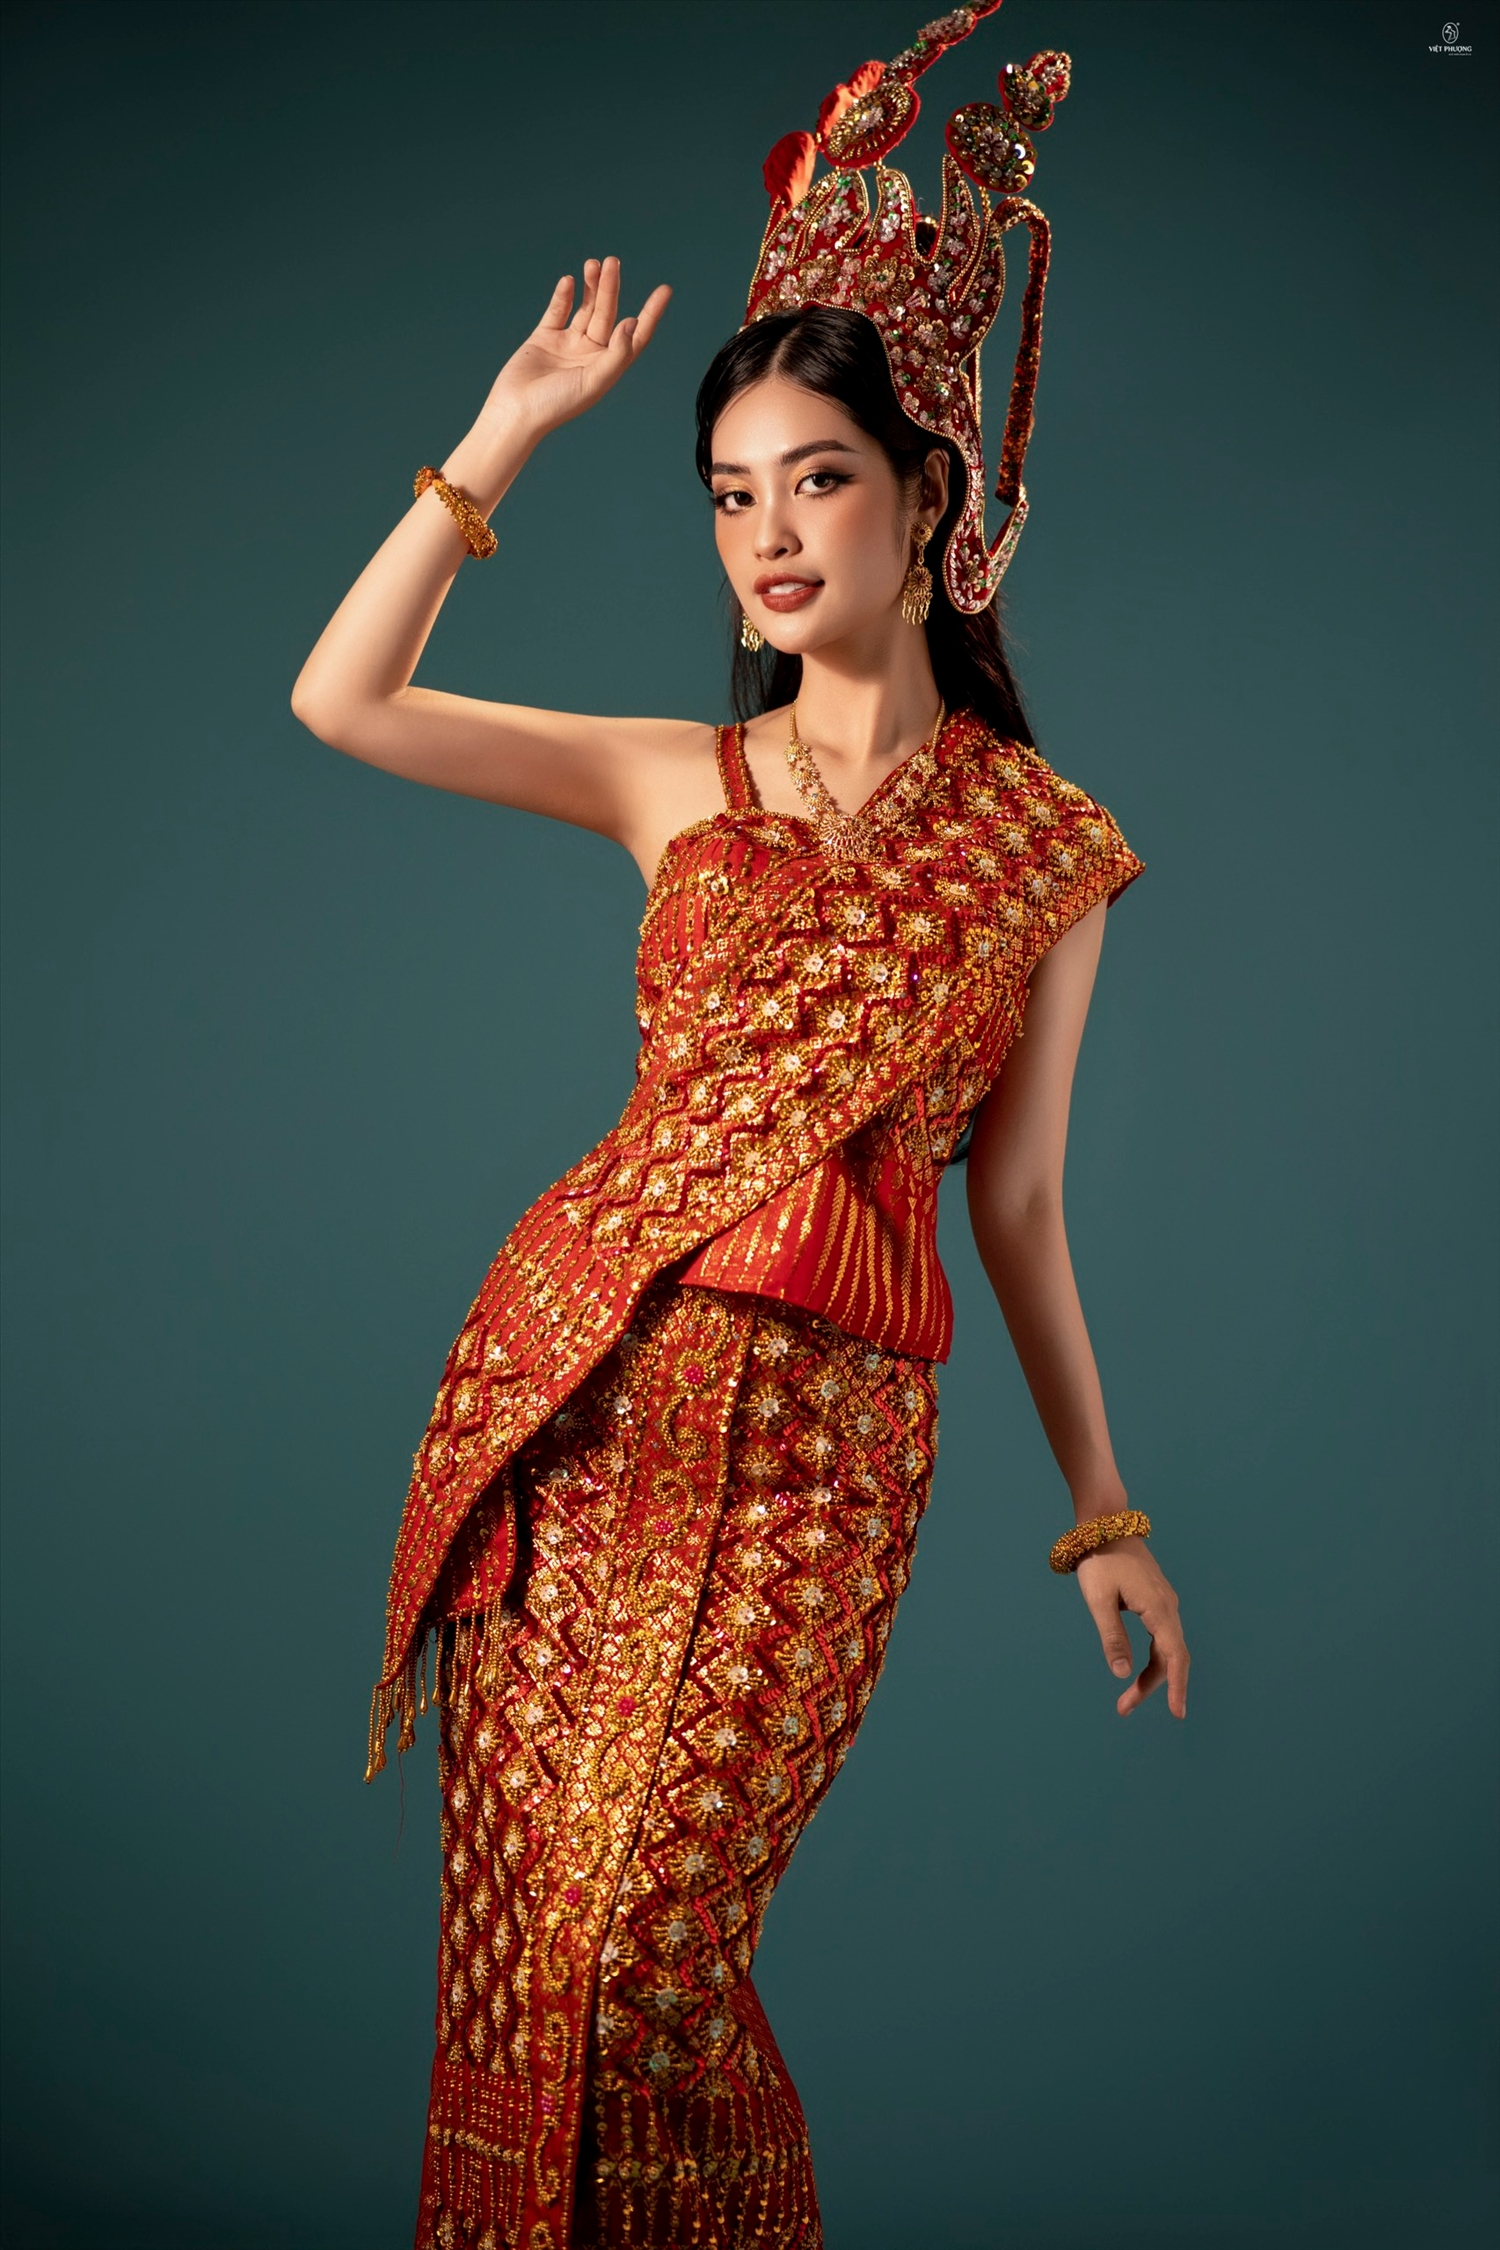 Hoa hậu Nông Thúy hằng trong trang phục truyền thống của dân tộc Khmer